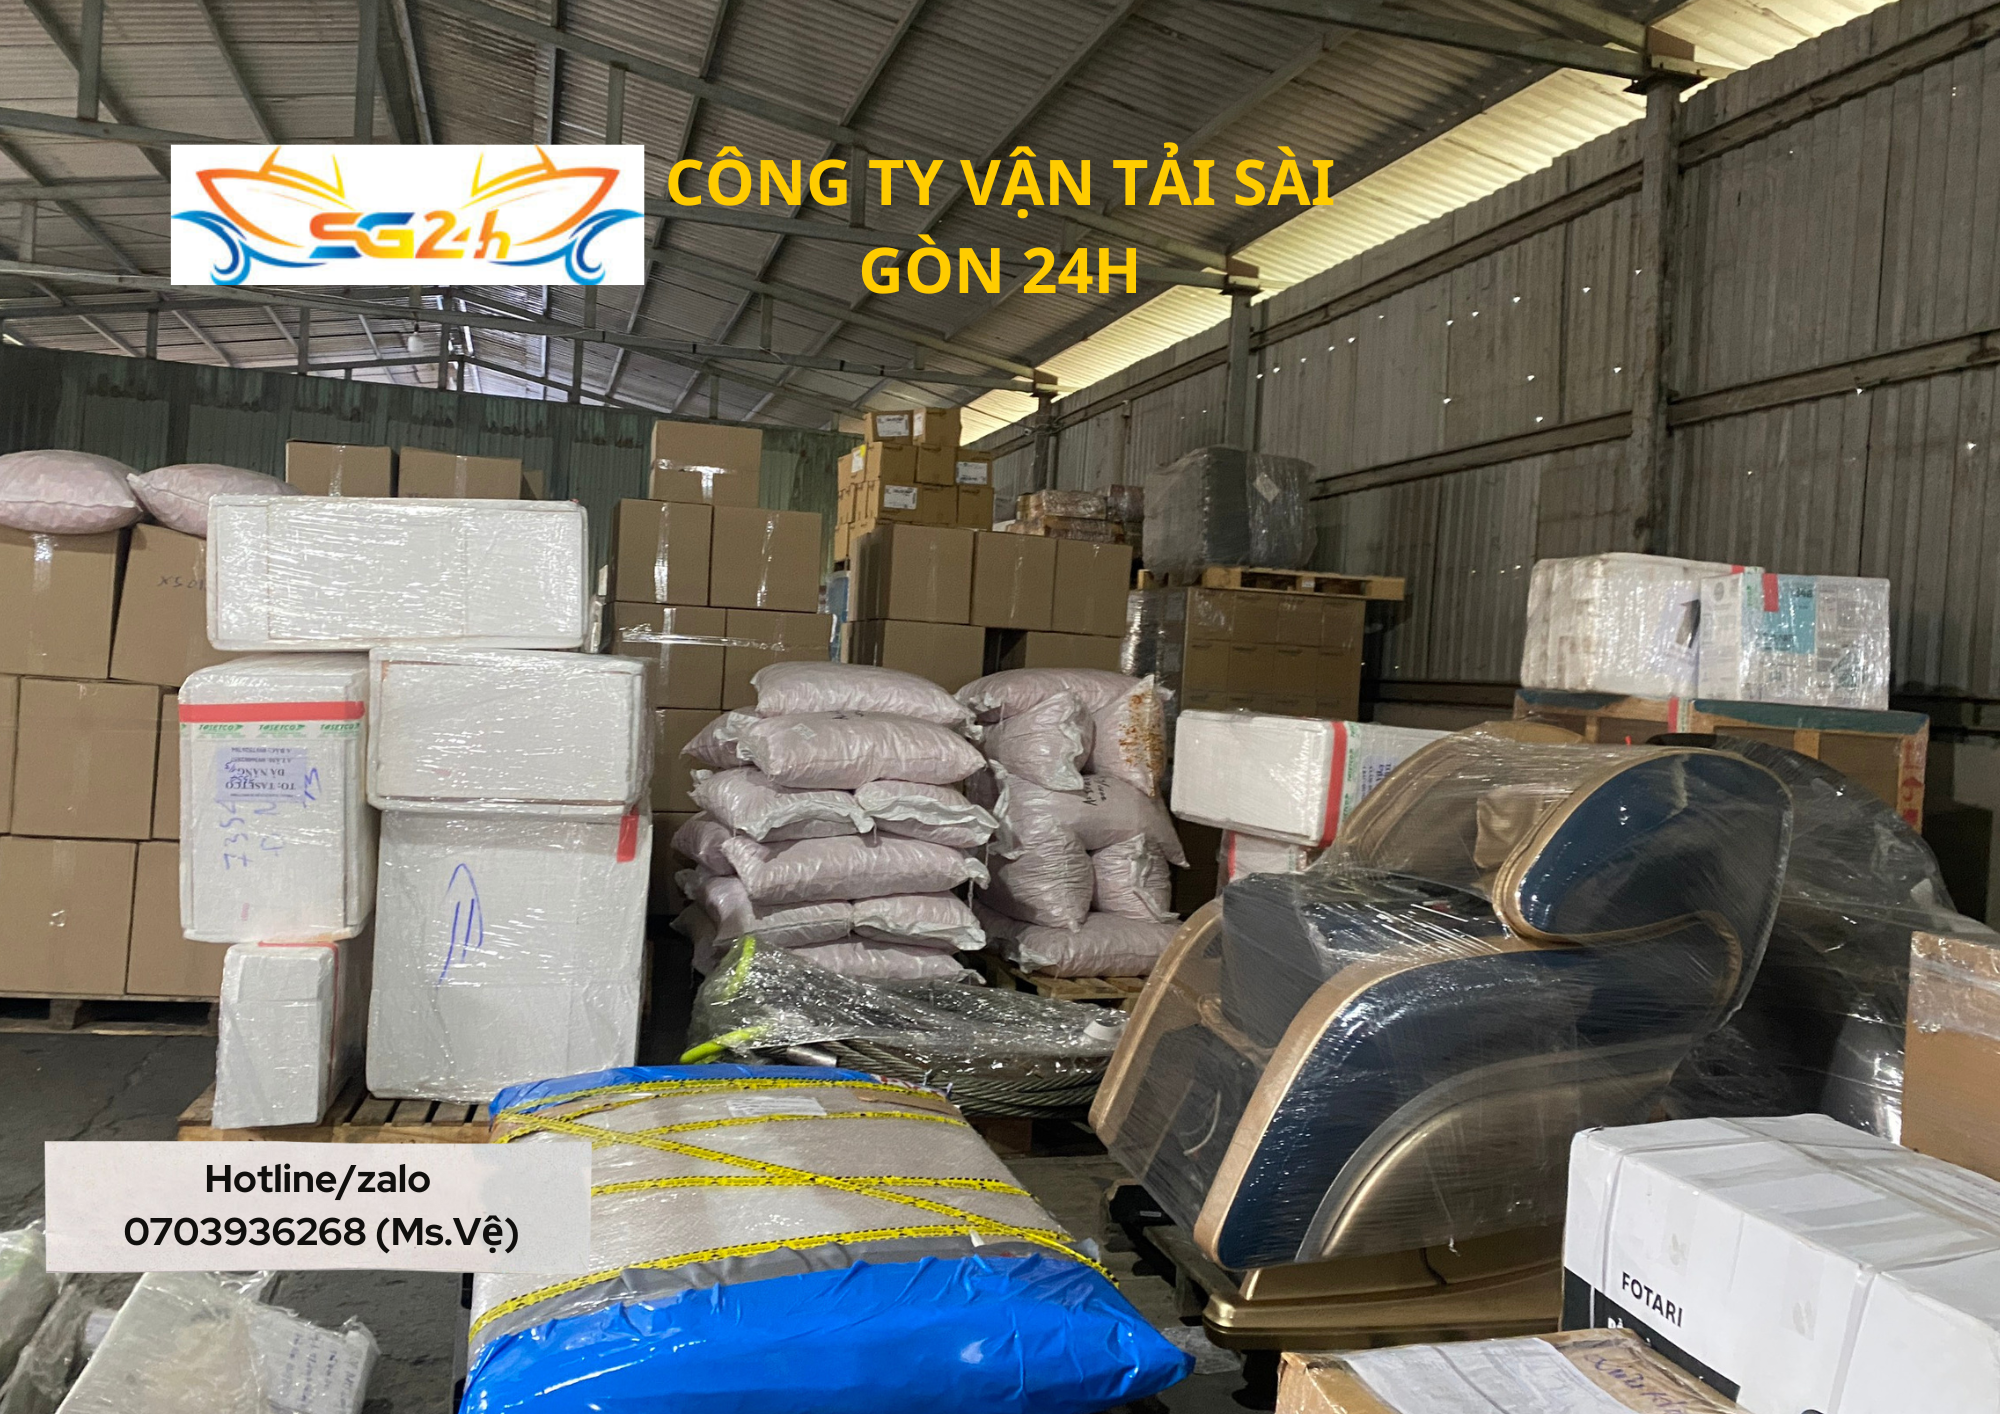 Những mặt hàng được phép vận chuyển tại Vận Tải Sài Gòn 24H